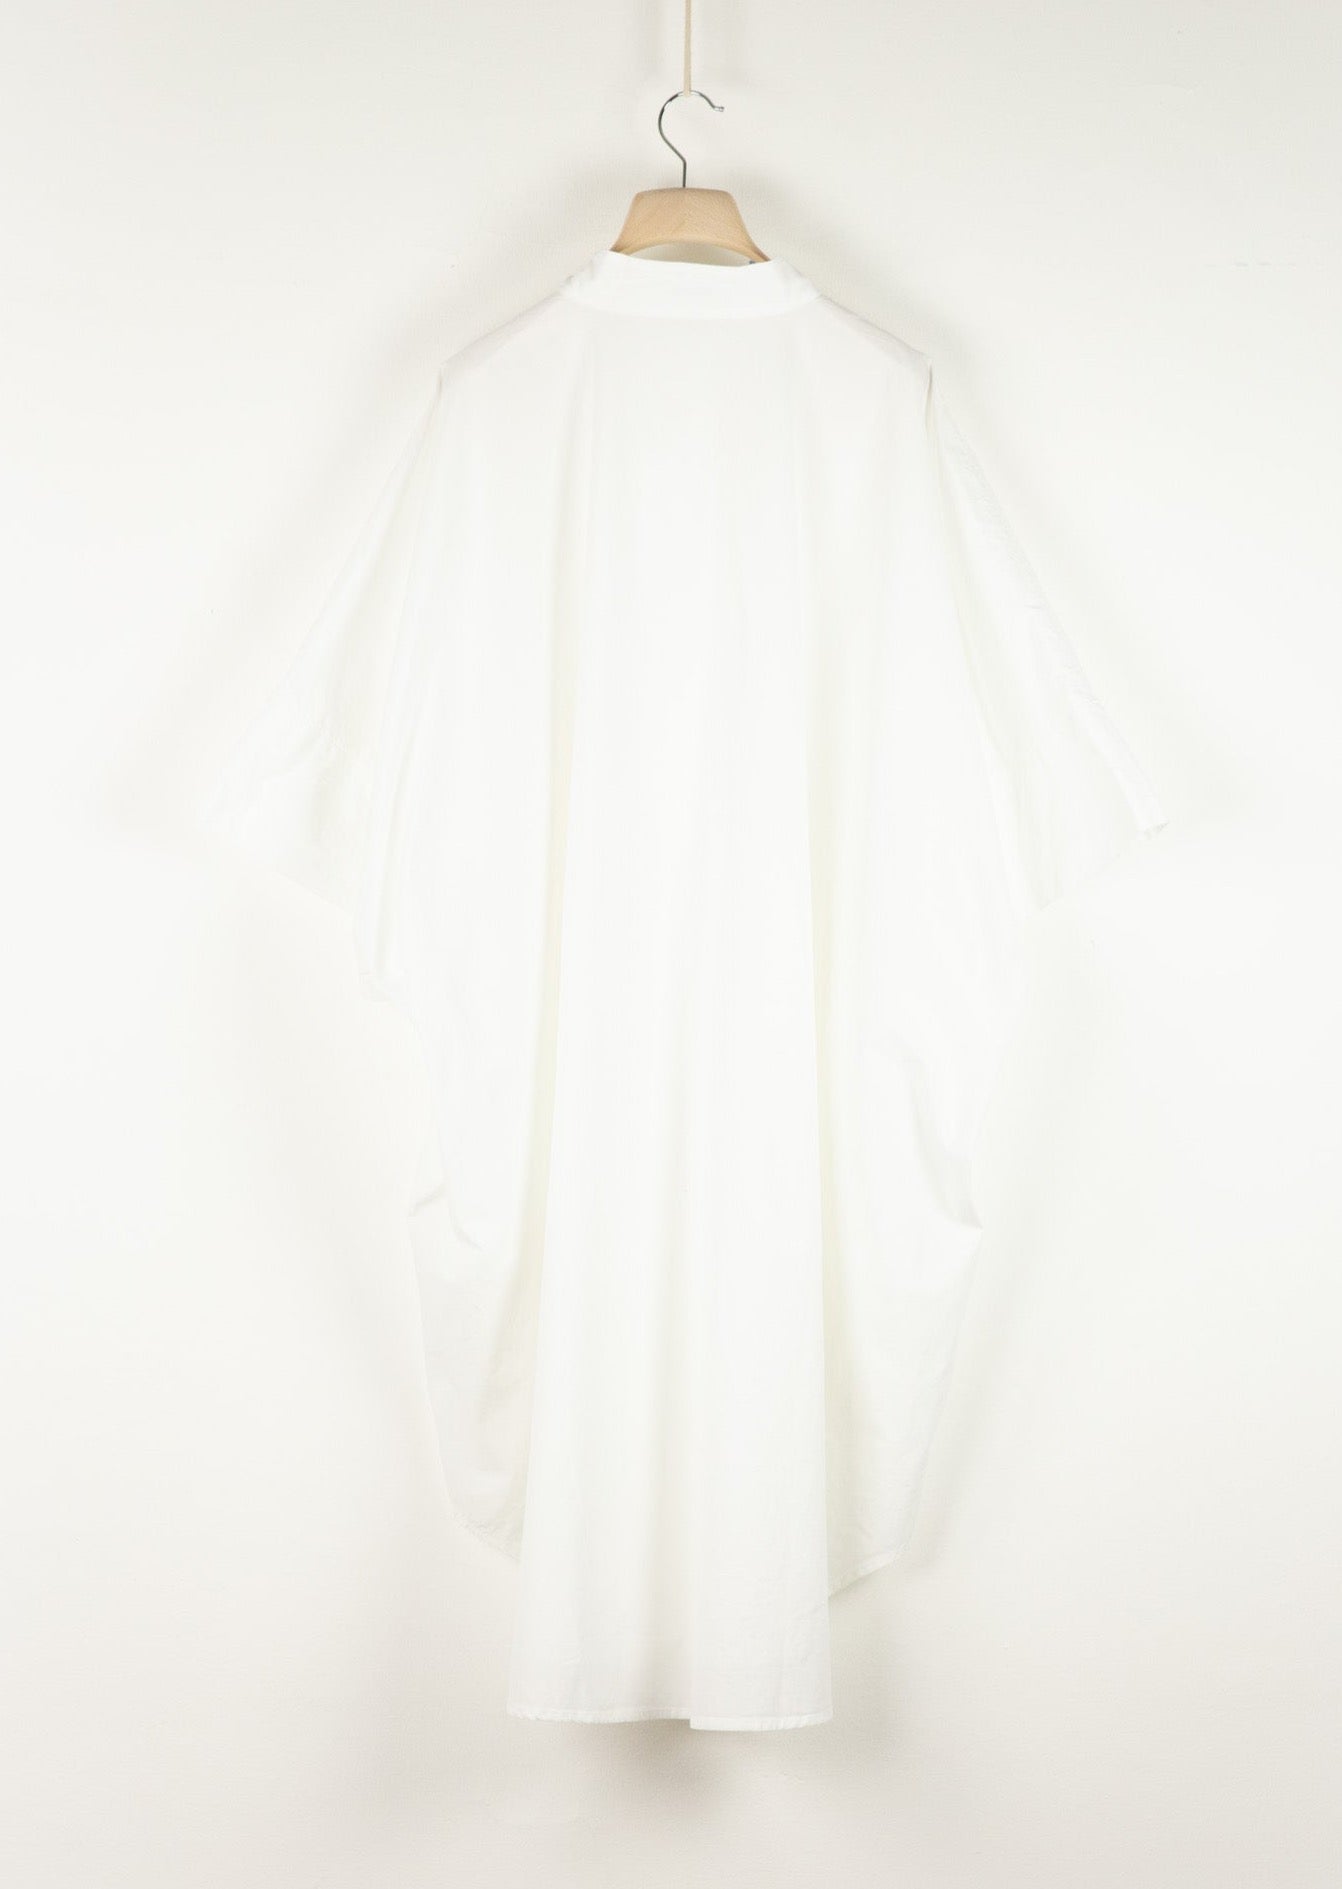 OCTO Overshirt | White Cotton